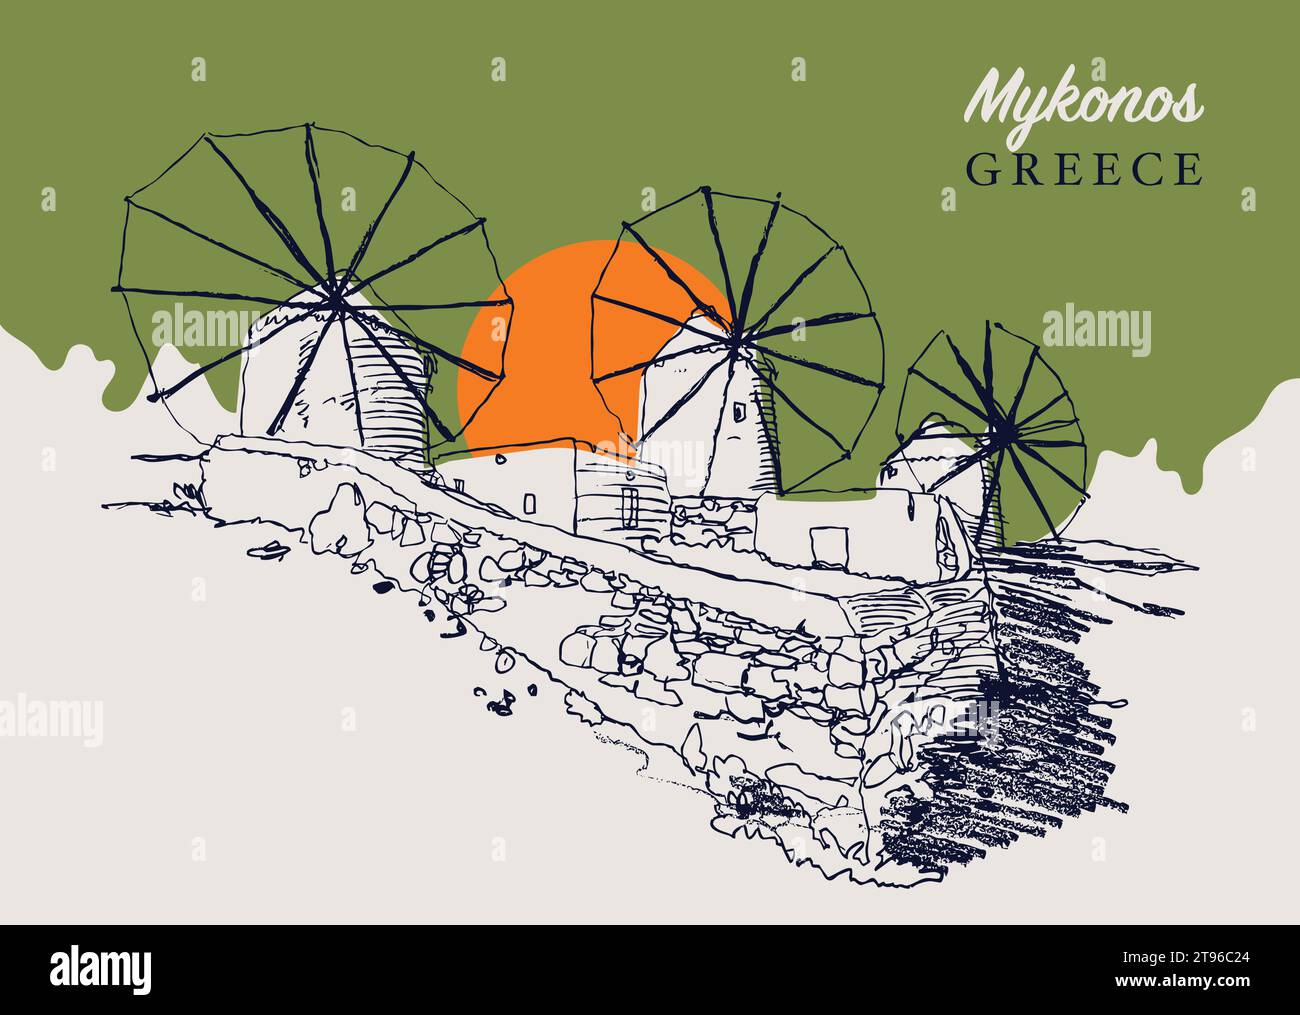 Vektor handgezeichnete Skizzenillustration der traditionellen ägäischen Windmühlen auf der griechischen Insel Mykonos. Stock Vektor